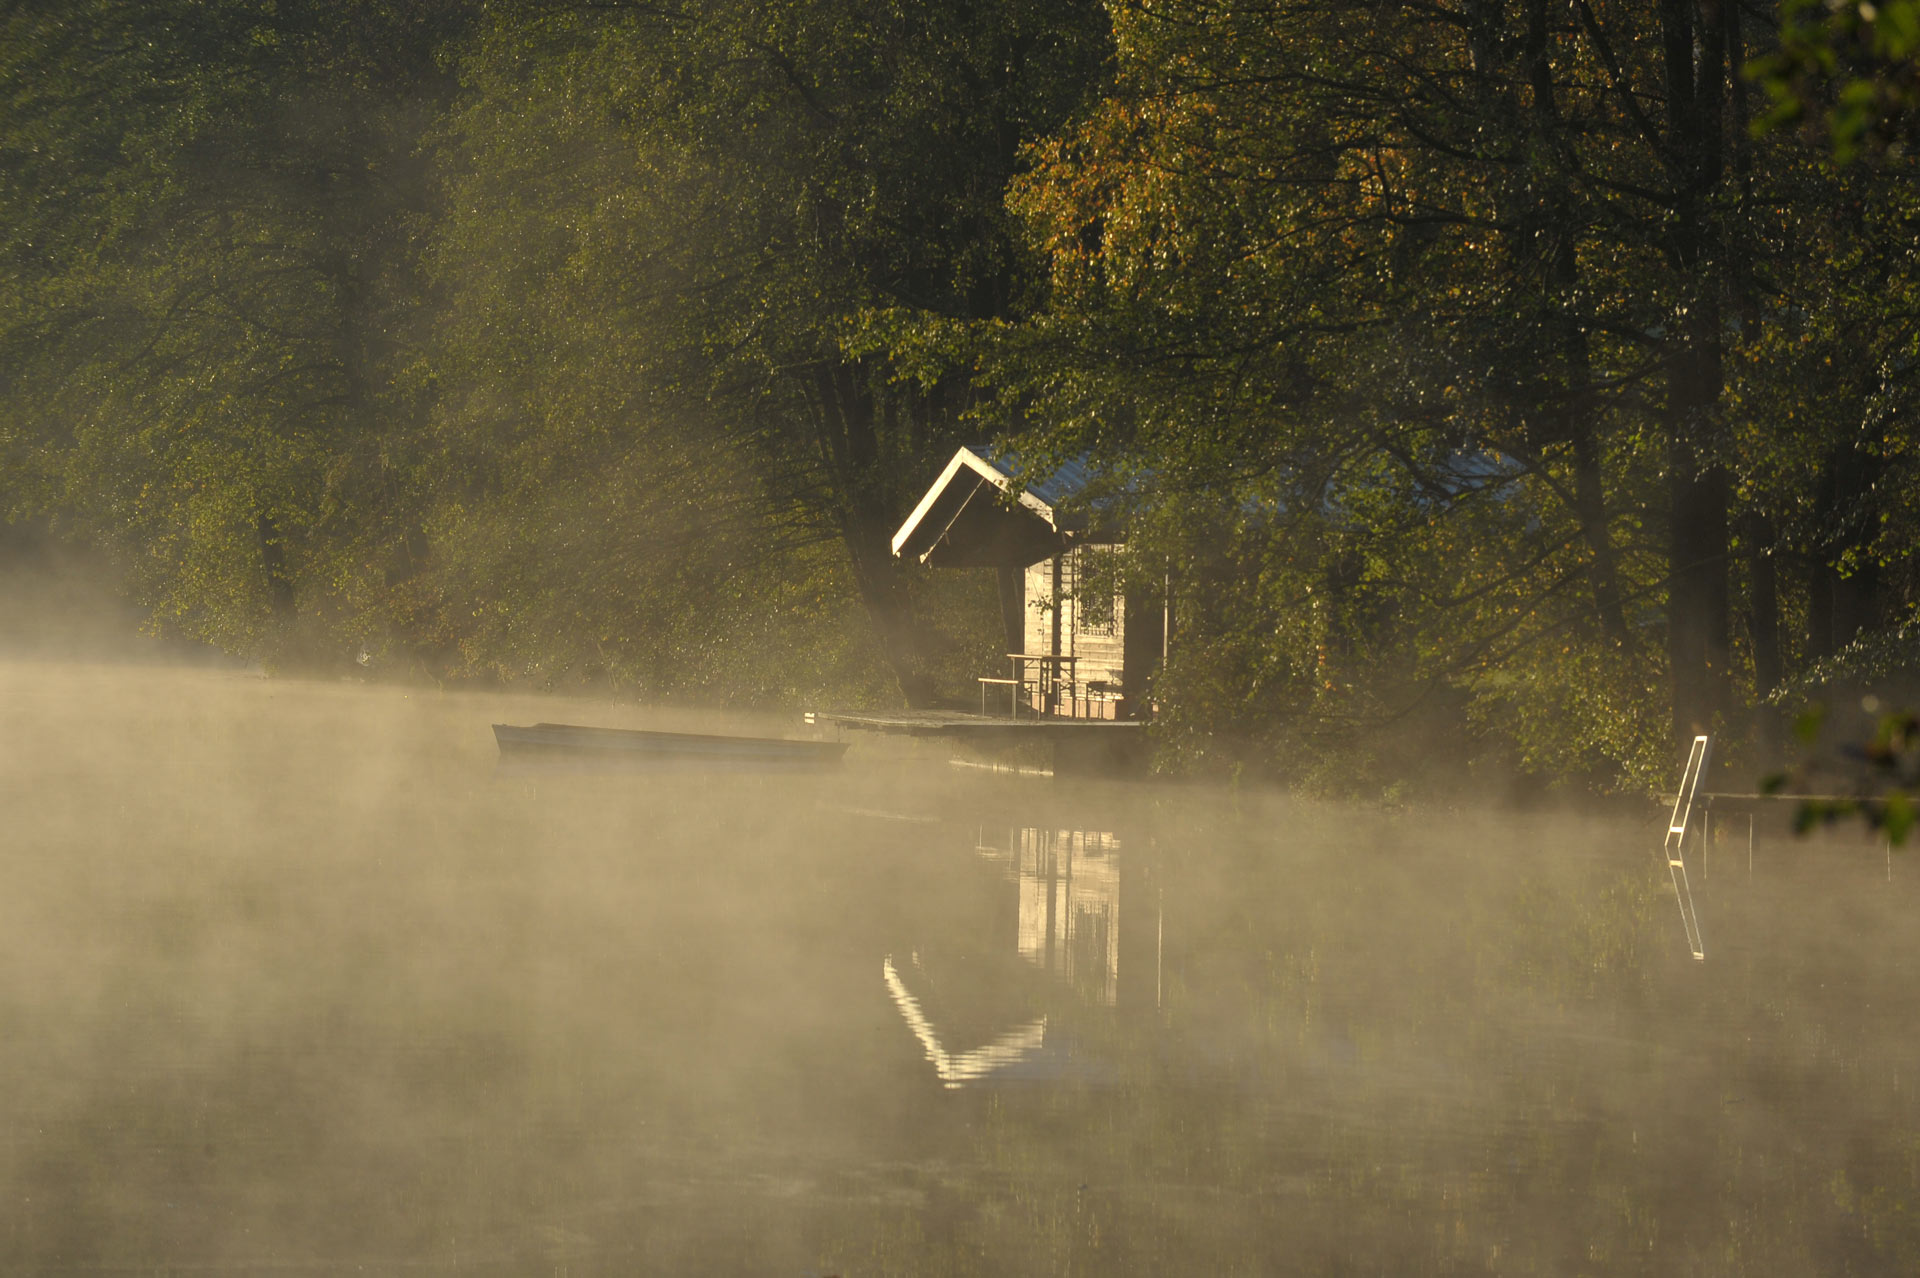 Hütte im Nebel am See